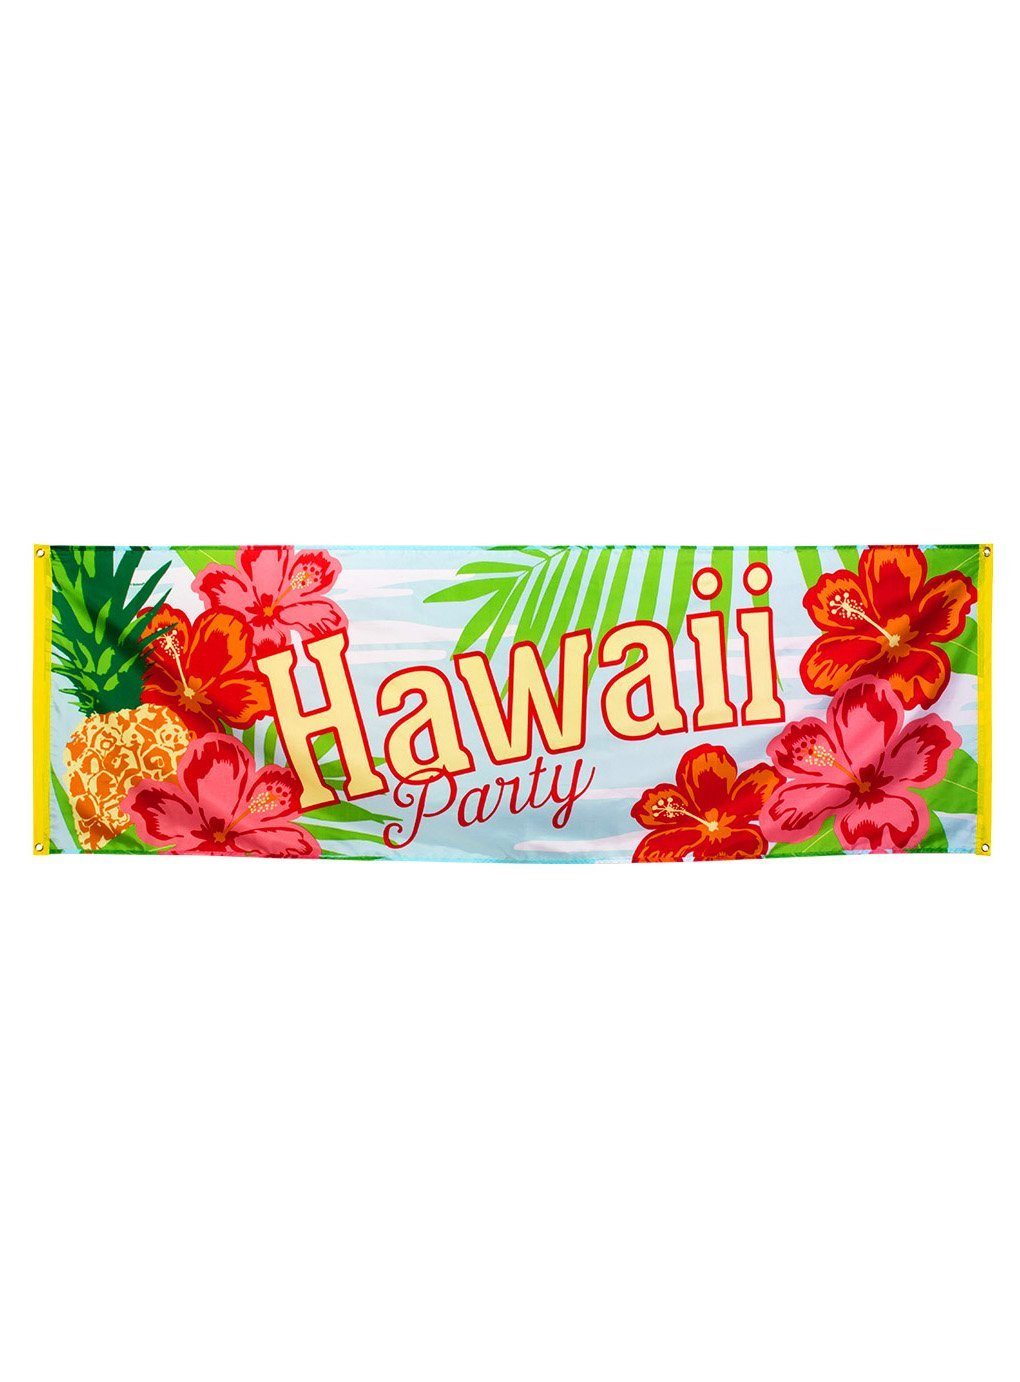 Südsee, Party Beachparty: für Part Karibik, Alles Hawaii Deine Hängedekoration Banner, Boland Du was sommerliche